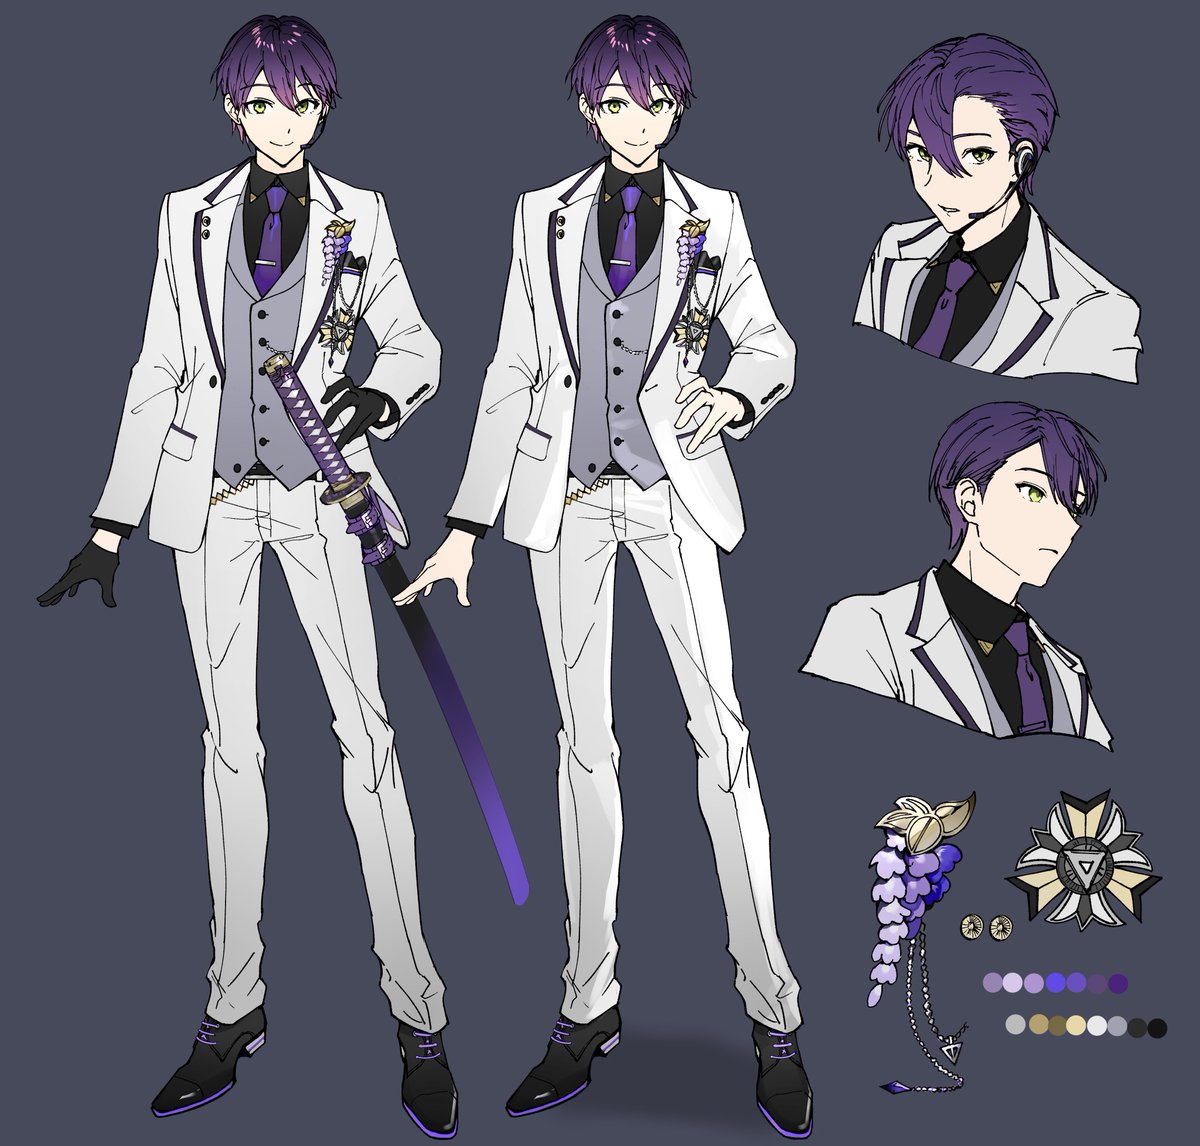 1boy male focus necktie purple hair pants weapon jacket  illustration images